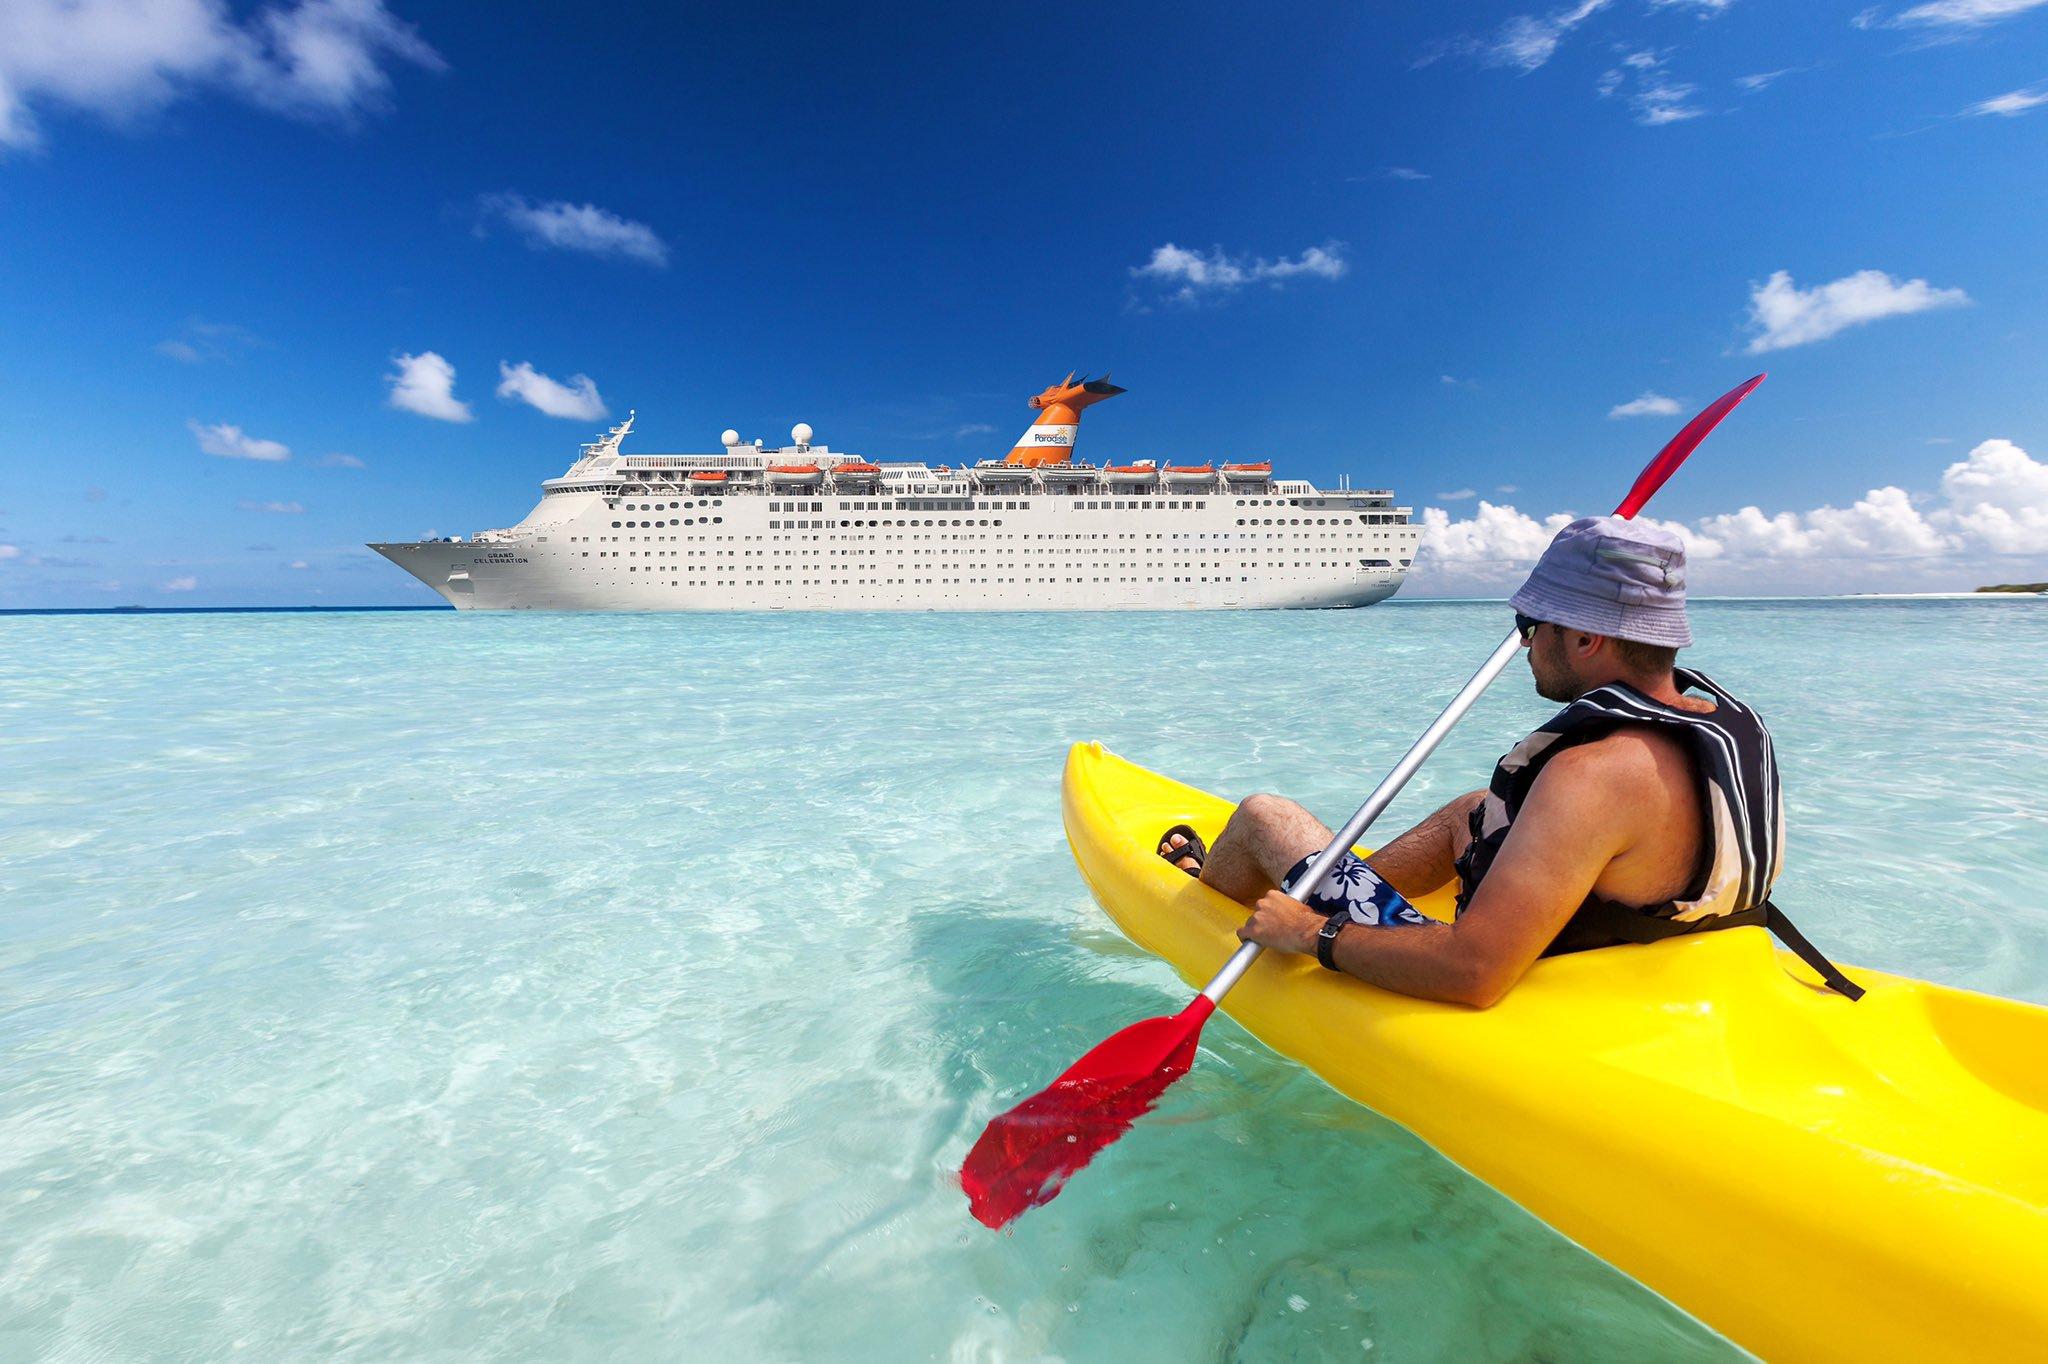 Bahamas Paradise Cruise Line Announces ARTSEA Cruise Cruise.Blog